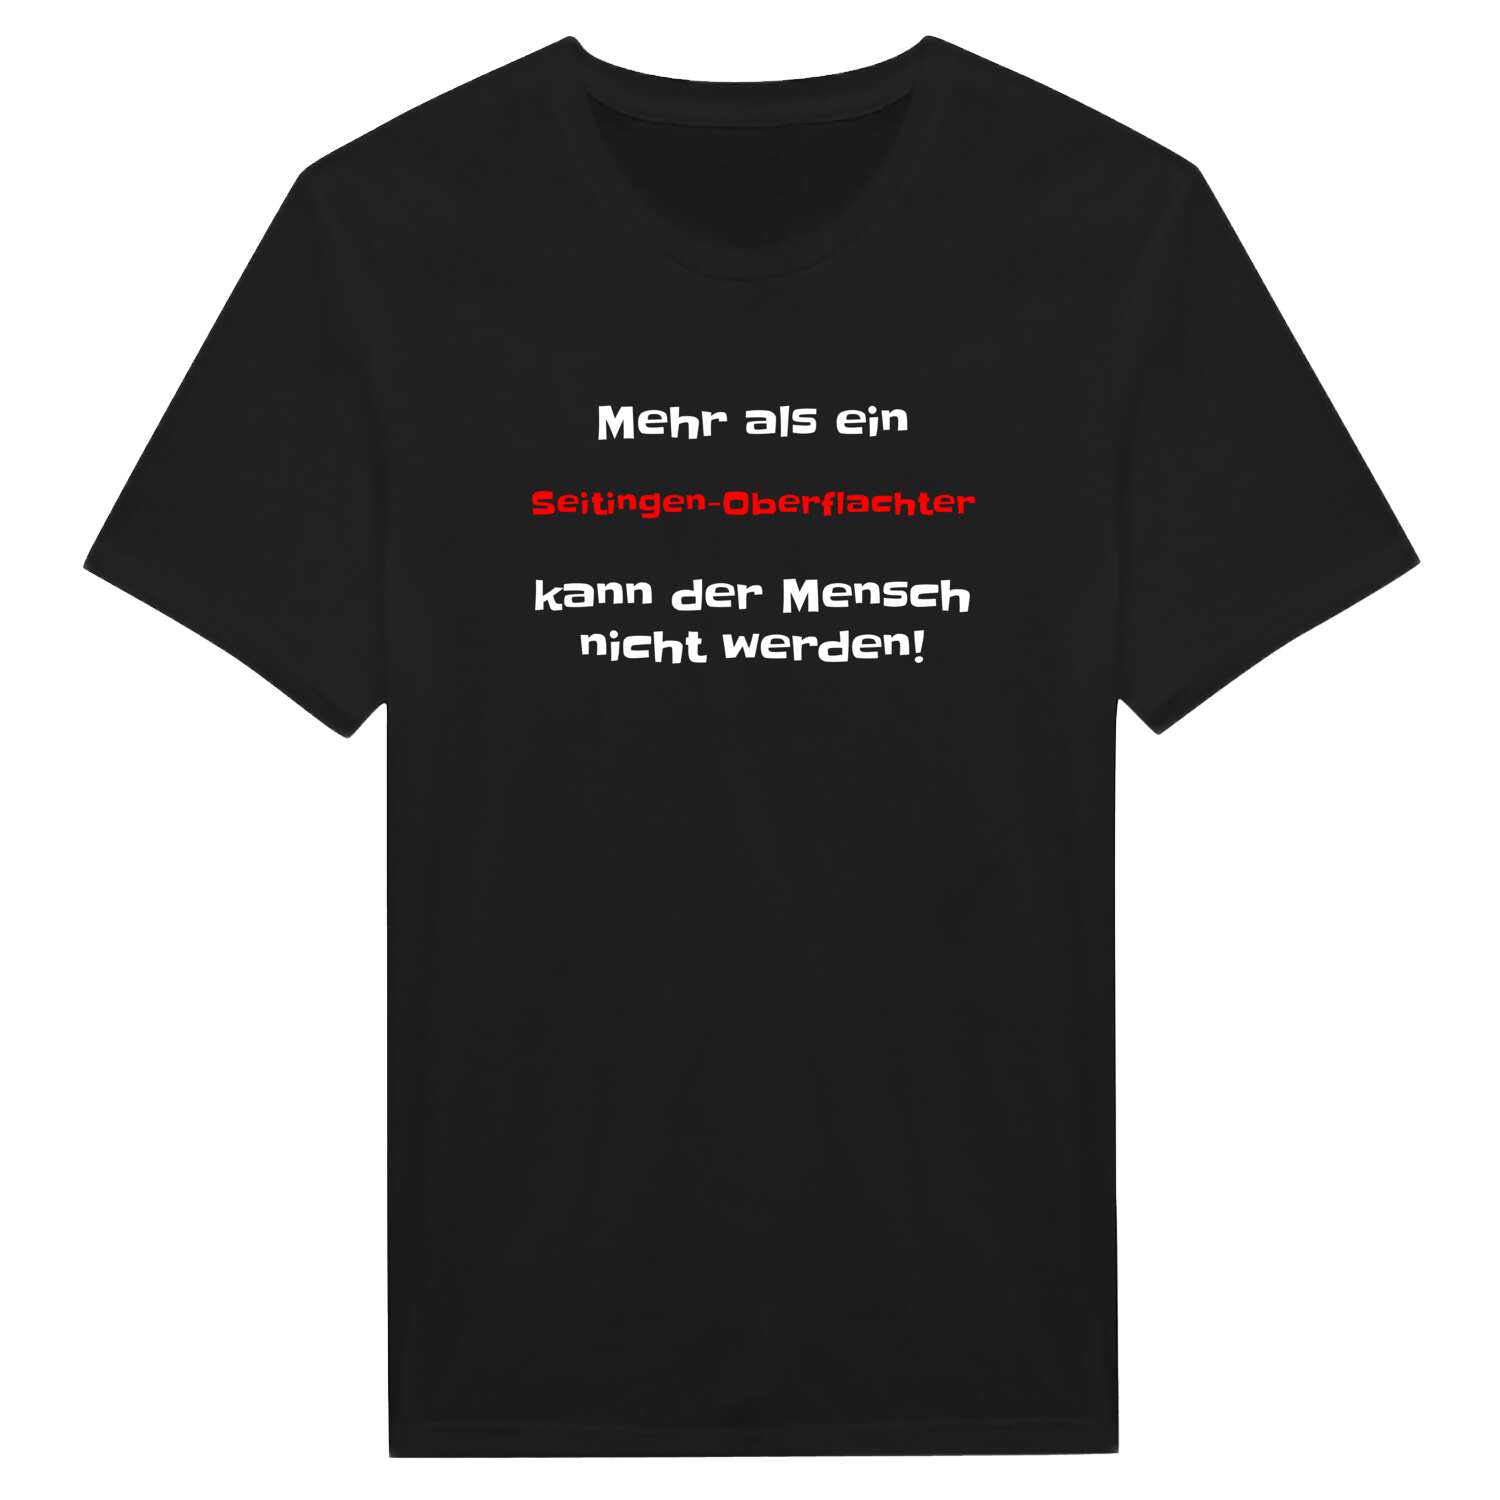 Seitingen-Oberflacht T-Shirt »Mehr als ein«